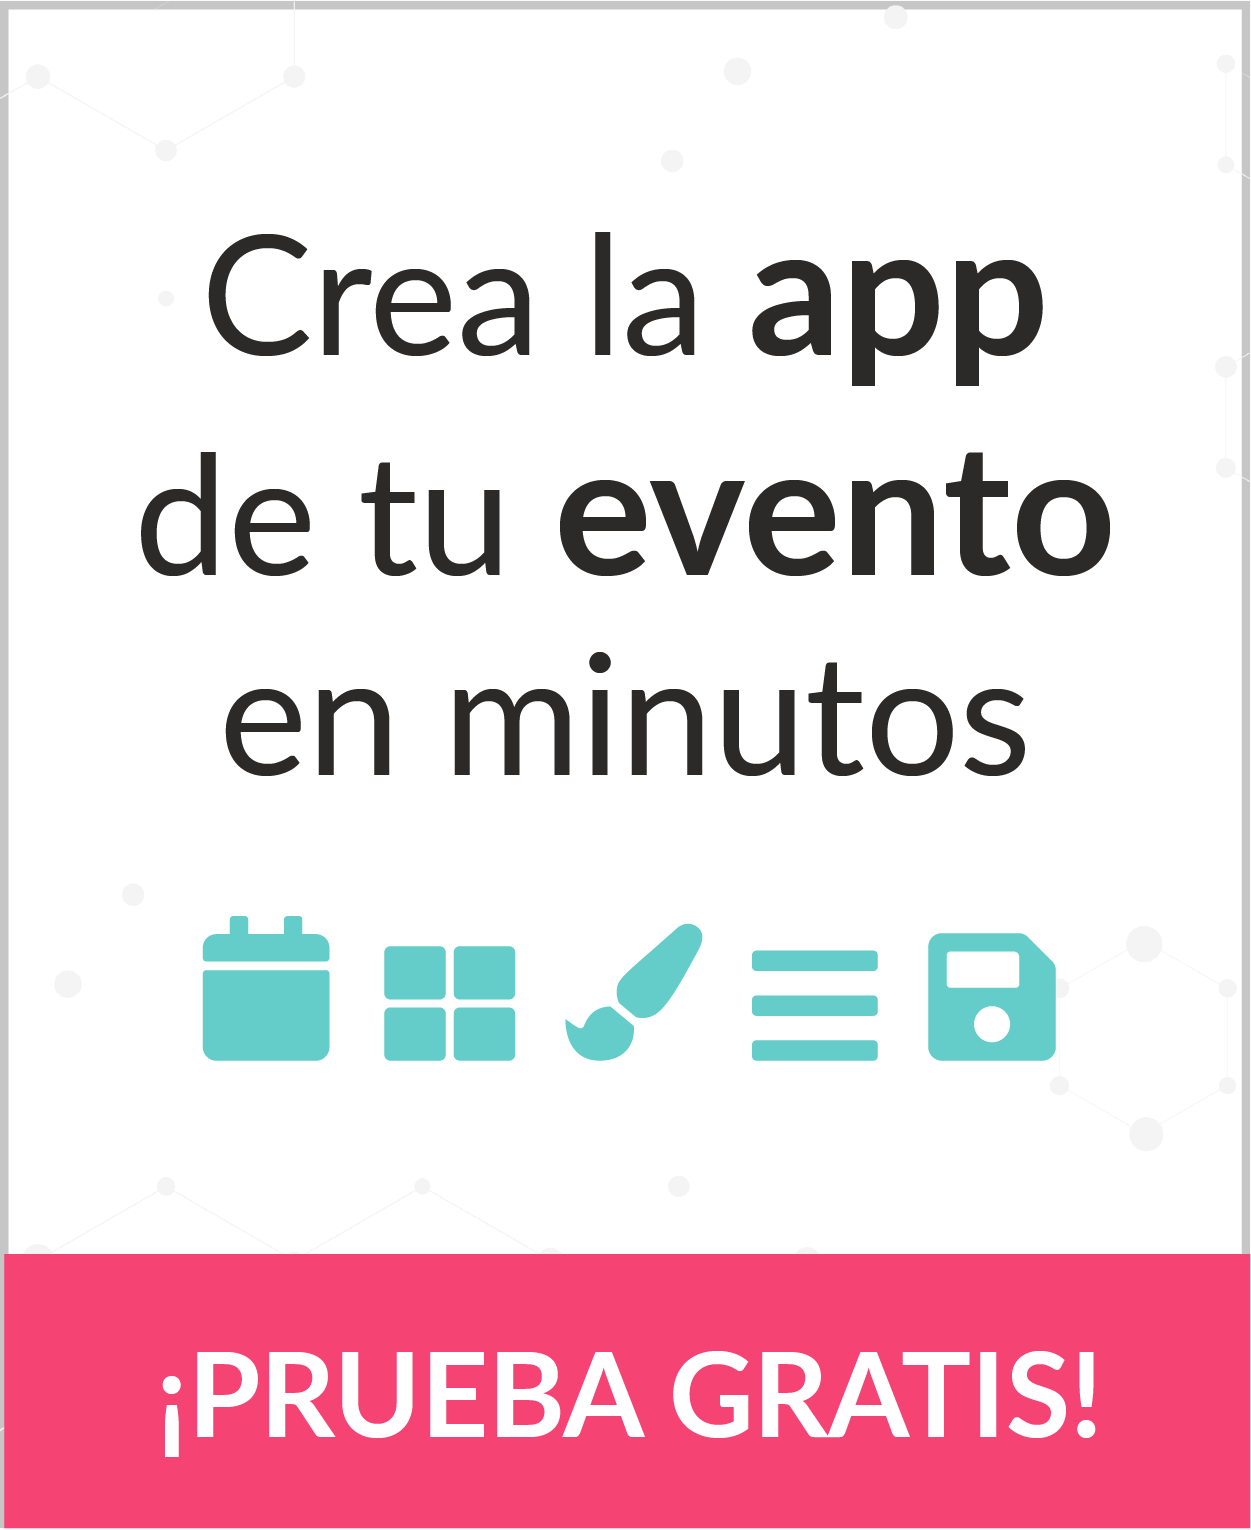 Eventool - Crea la app de tu evento en minutos